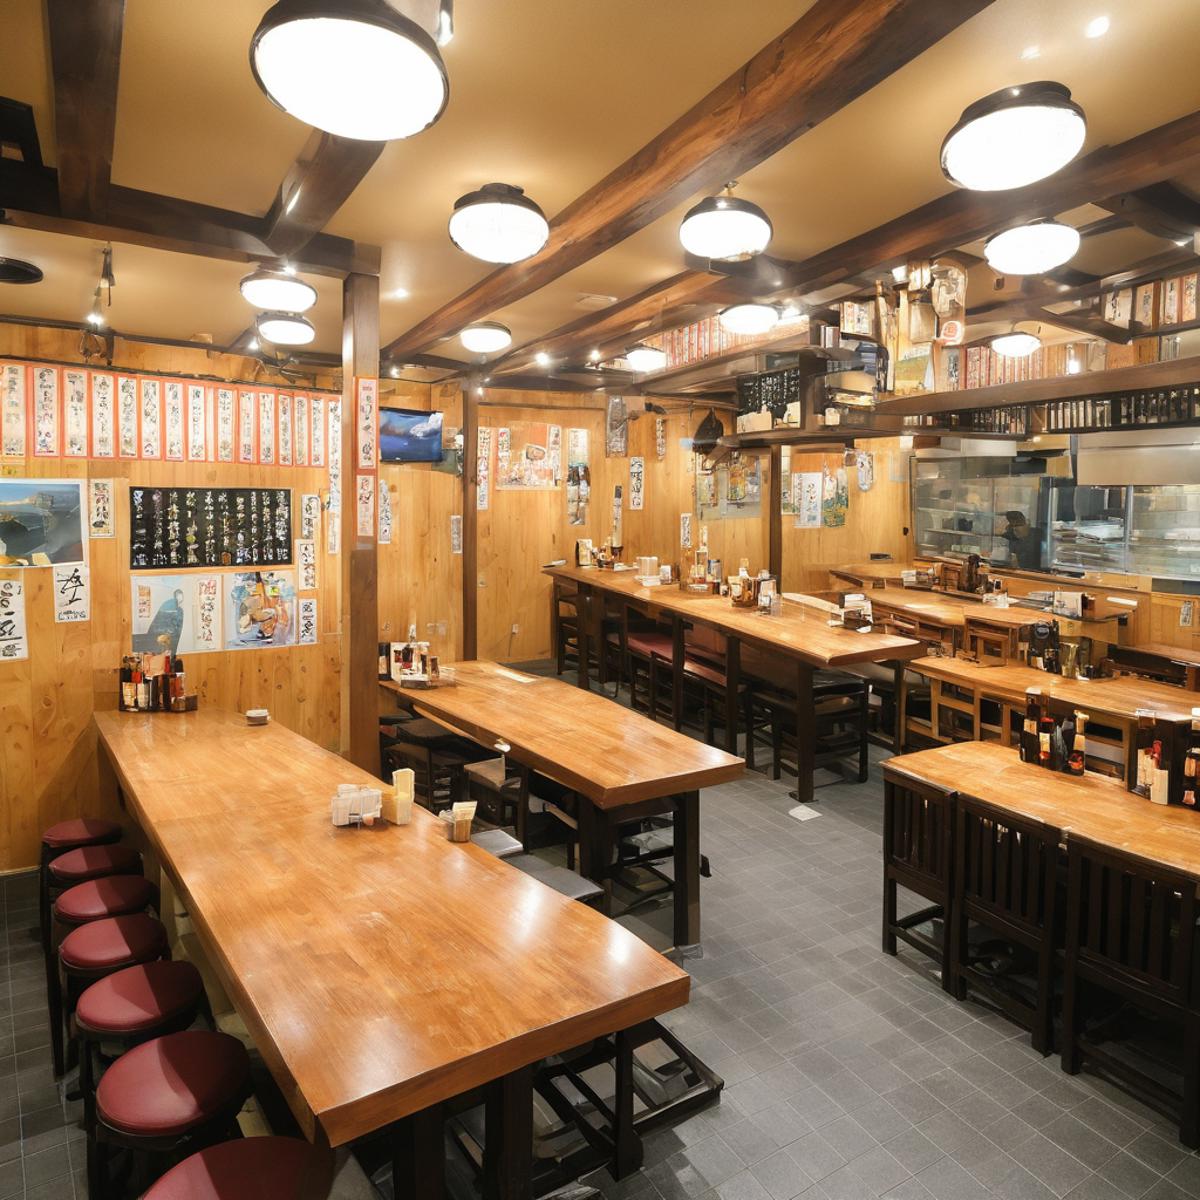 大衆酒場の店内 / Inside a popular Japanese Tavern SDXL image by swingwings